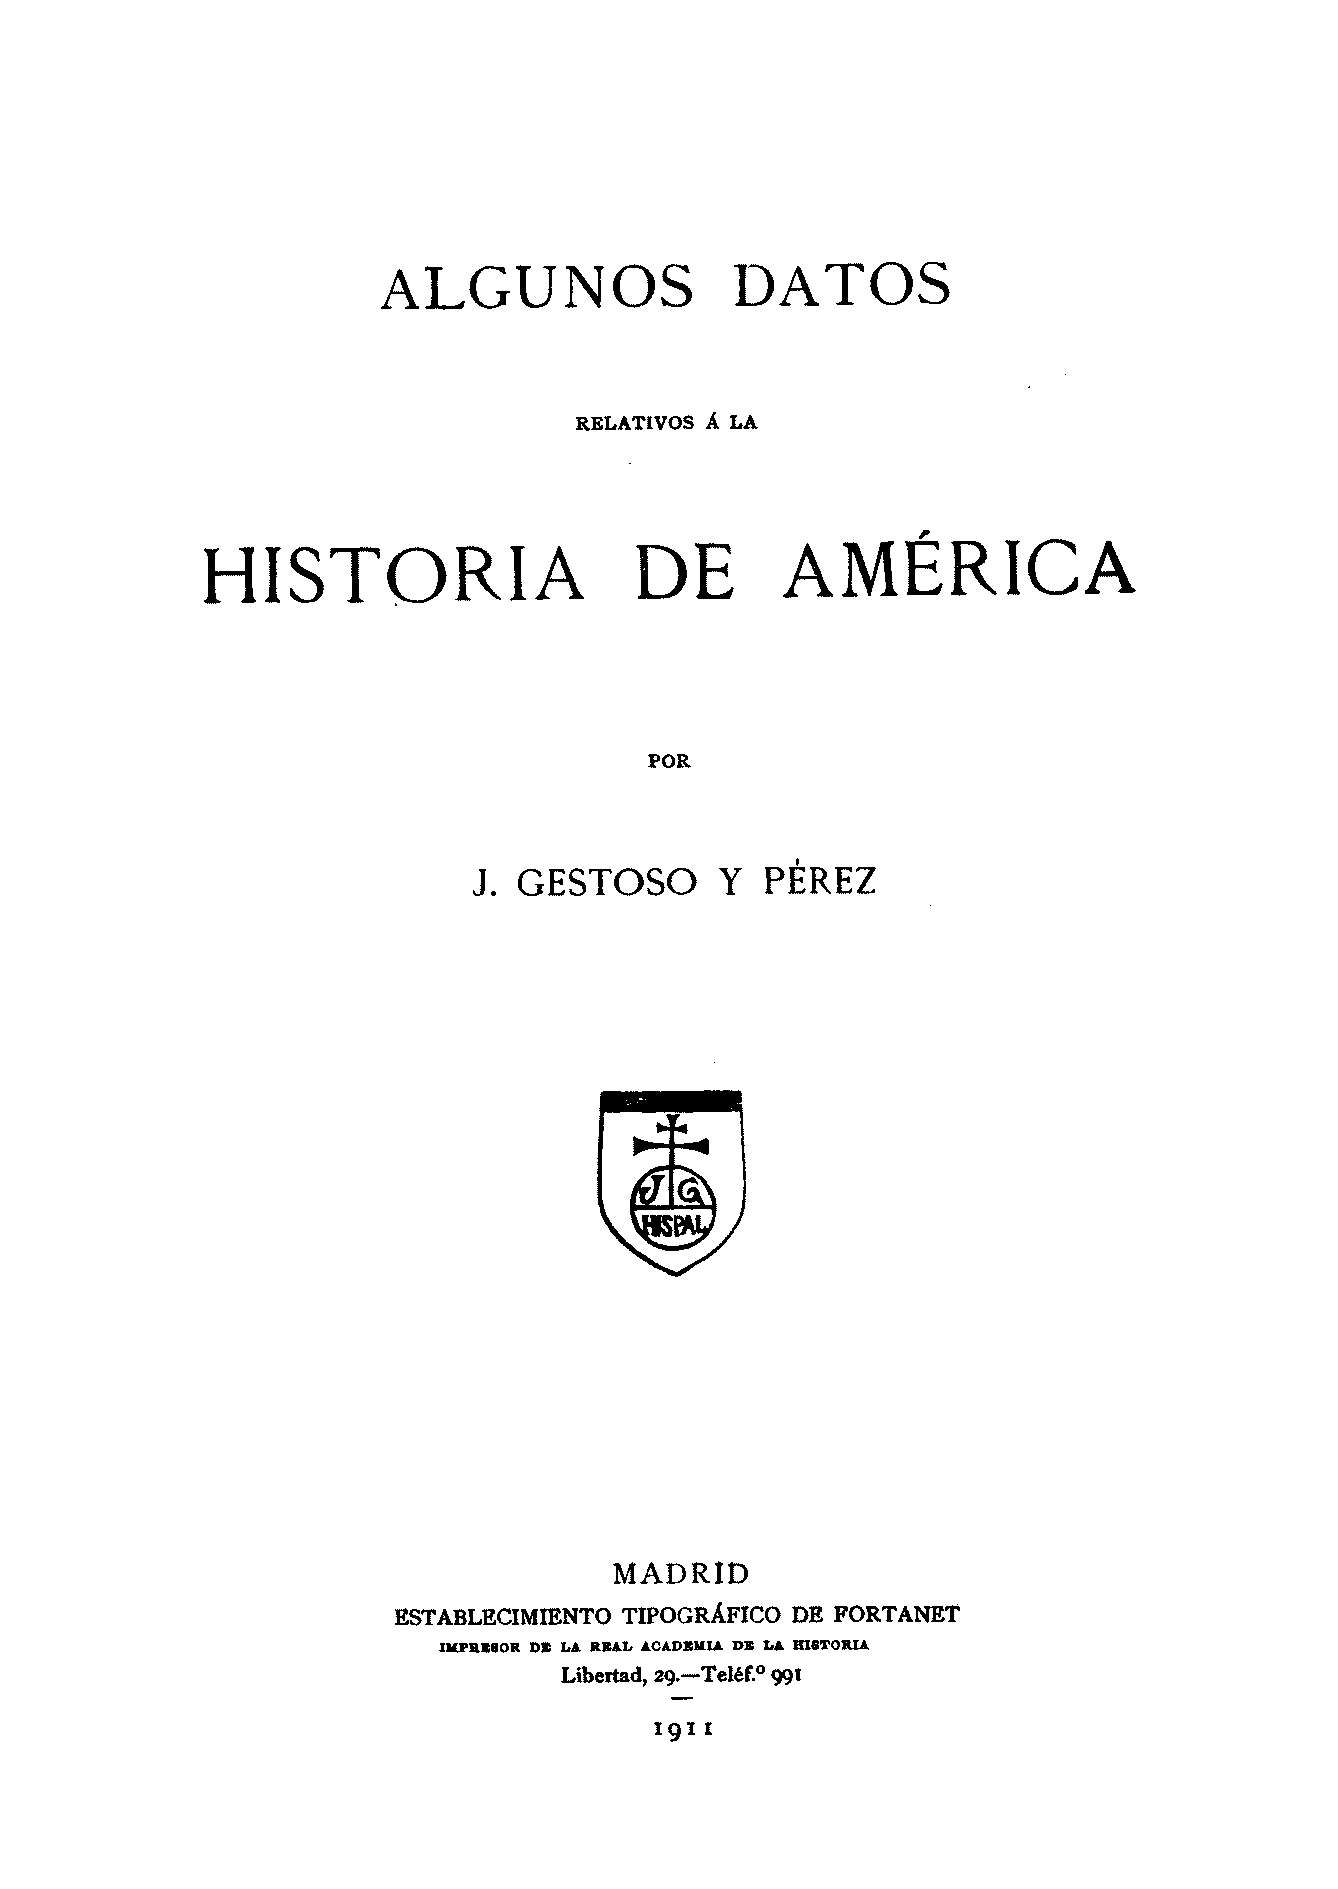 Algunos datos relativos á la Historia de América por J. Gestoso y Pérez